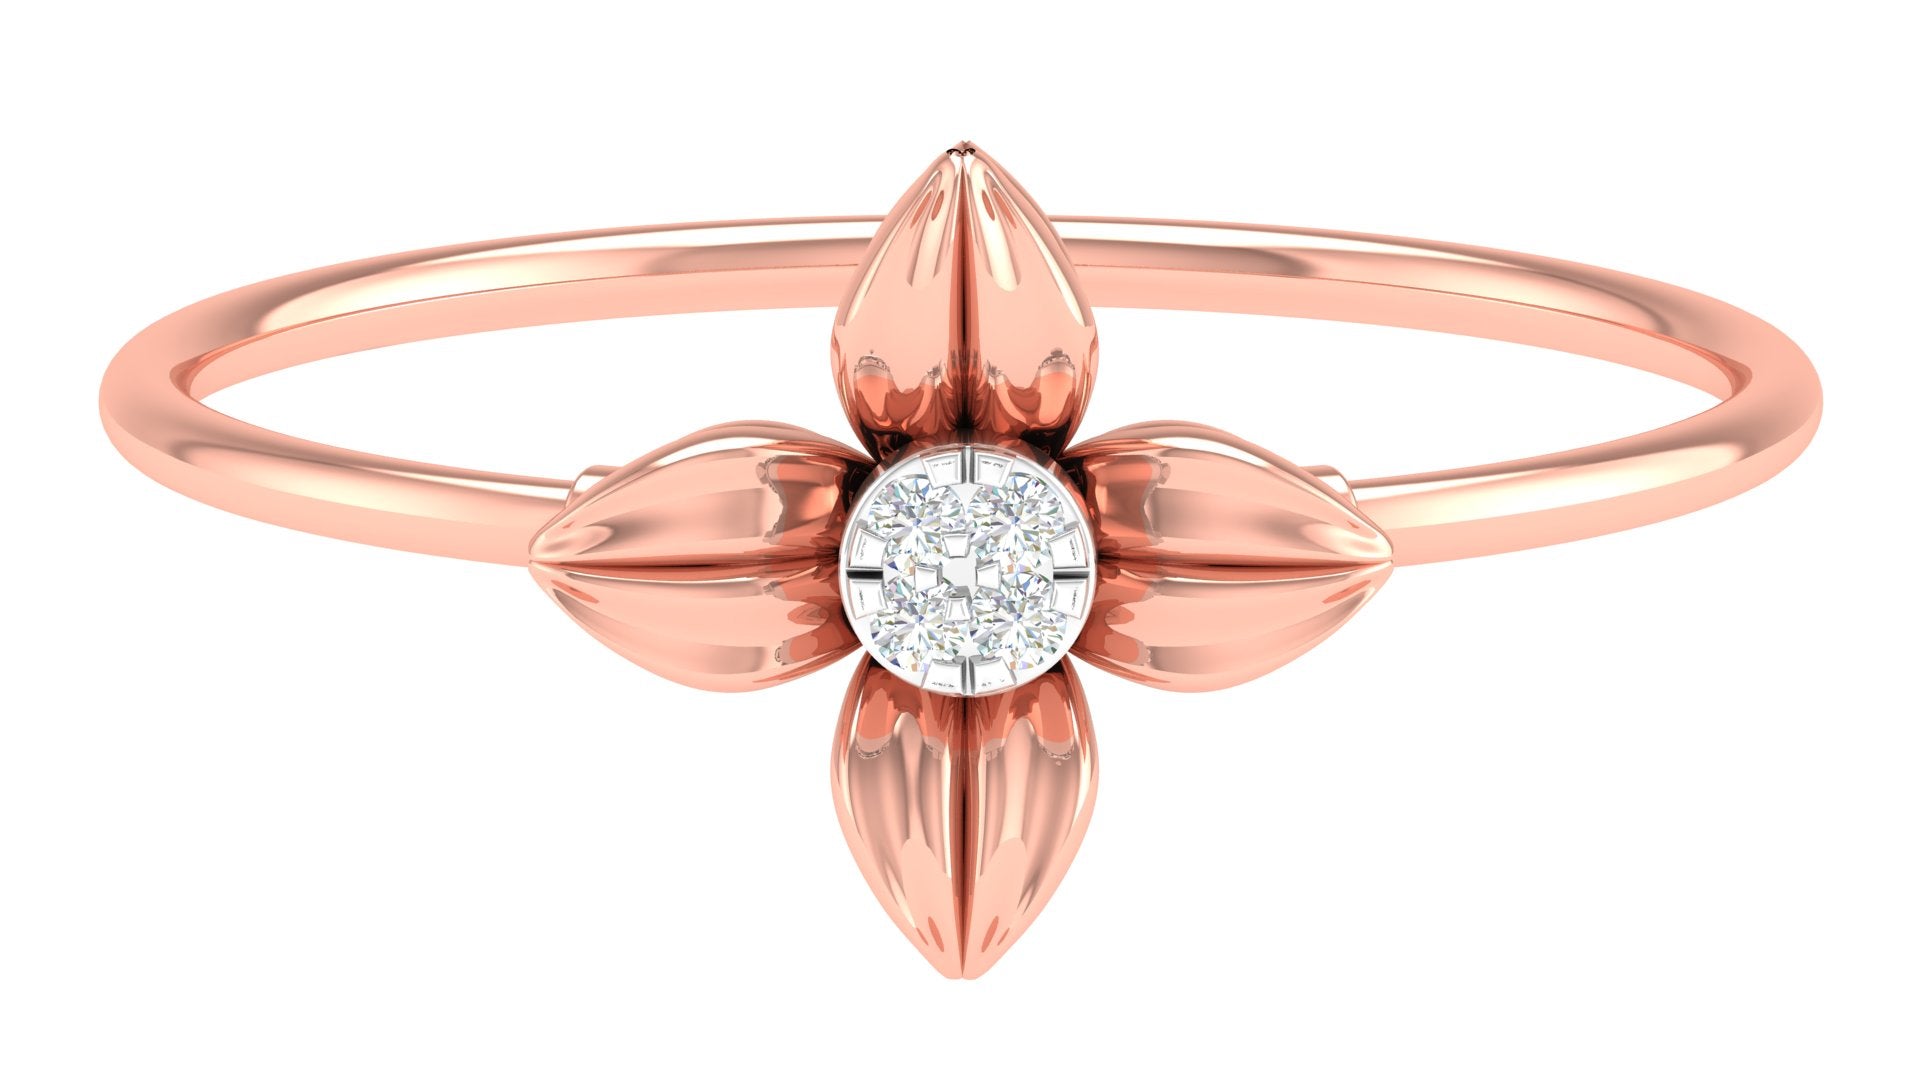 Aurora Blush 18kt Rose Gold Ring